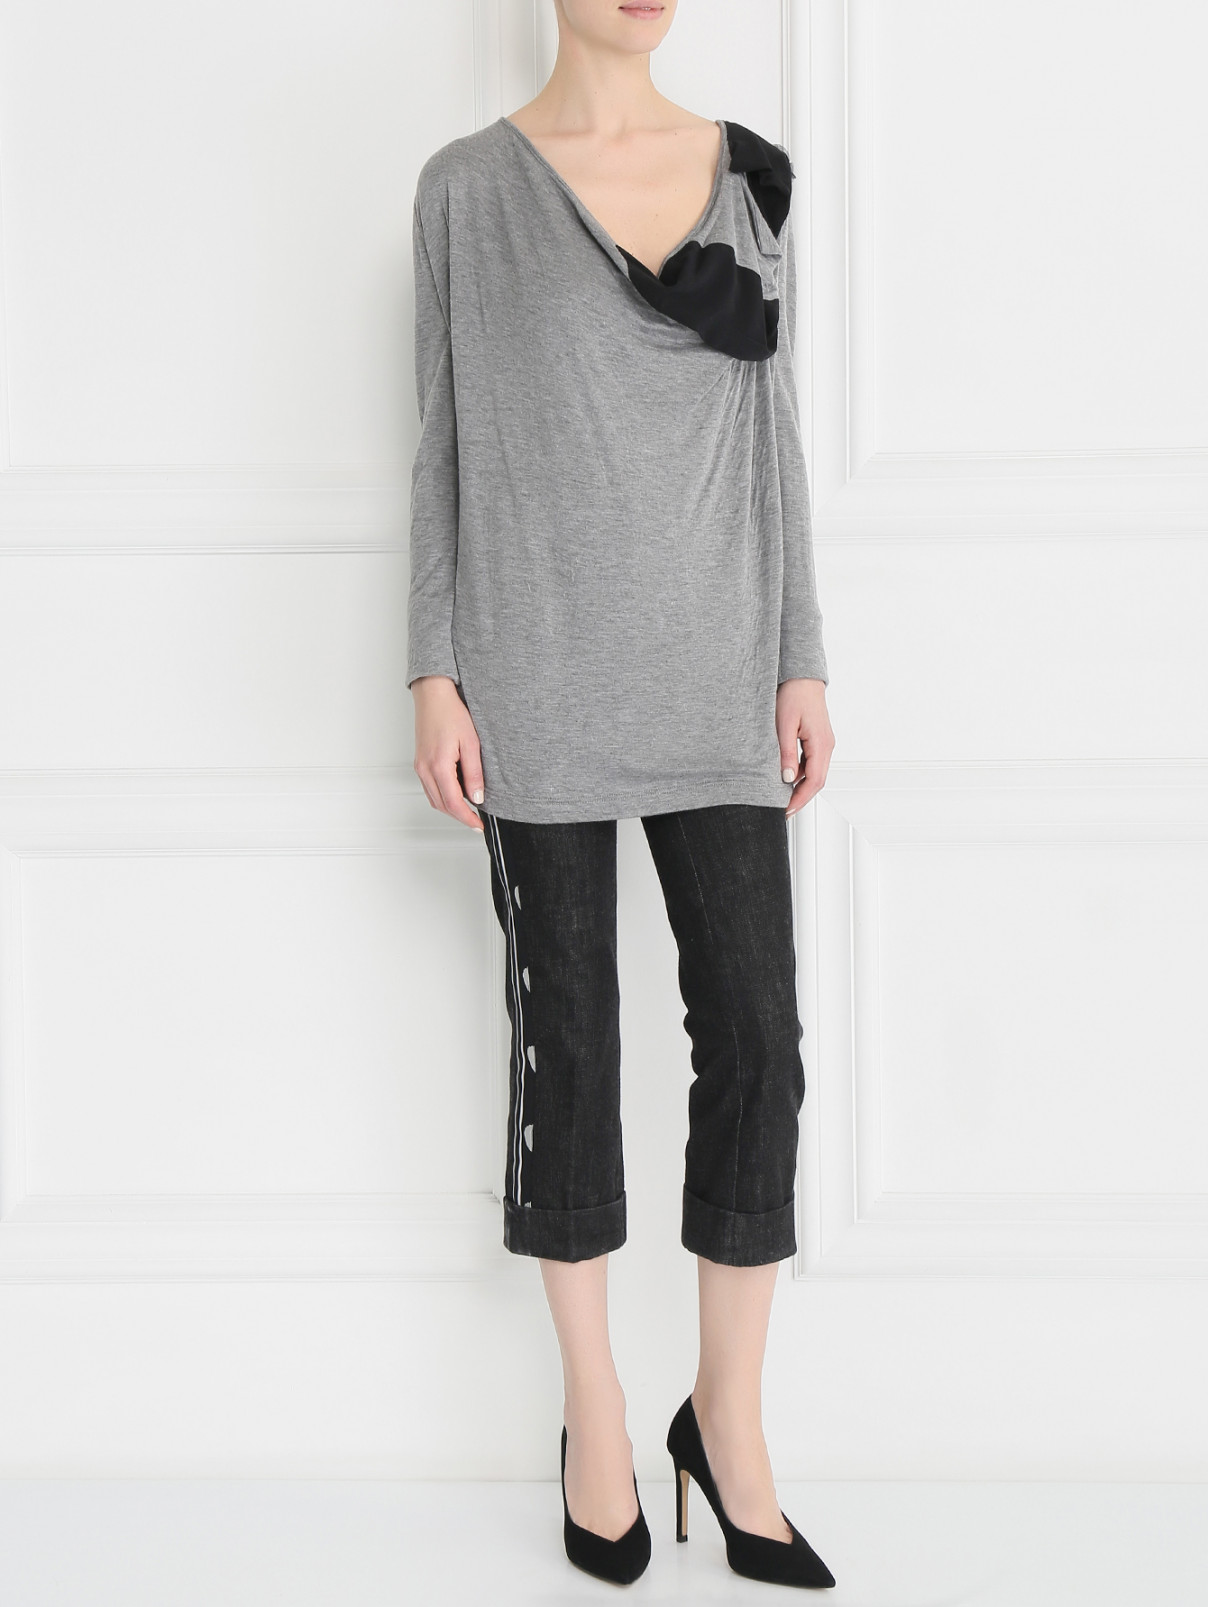 Блуза из шерсти и шелка с драпировкой Antonio Marras  –  Модель Общий вид  – Цвет:  Серый